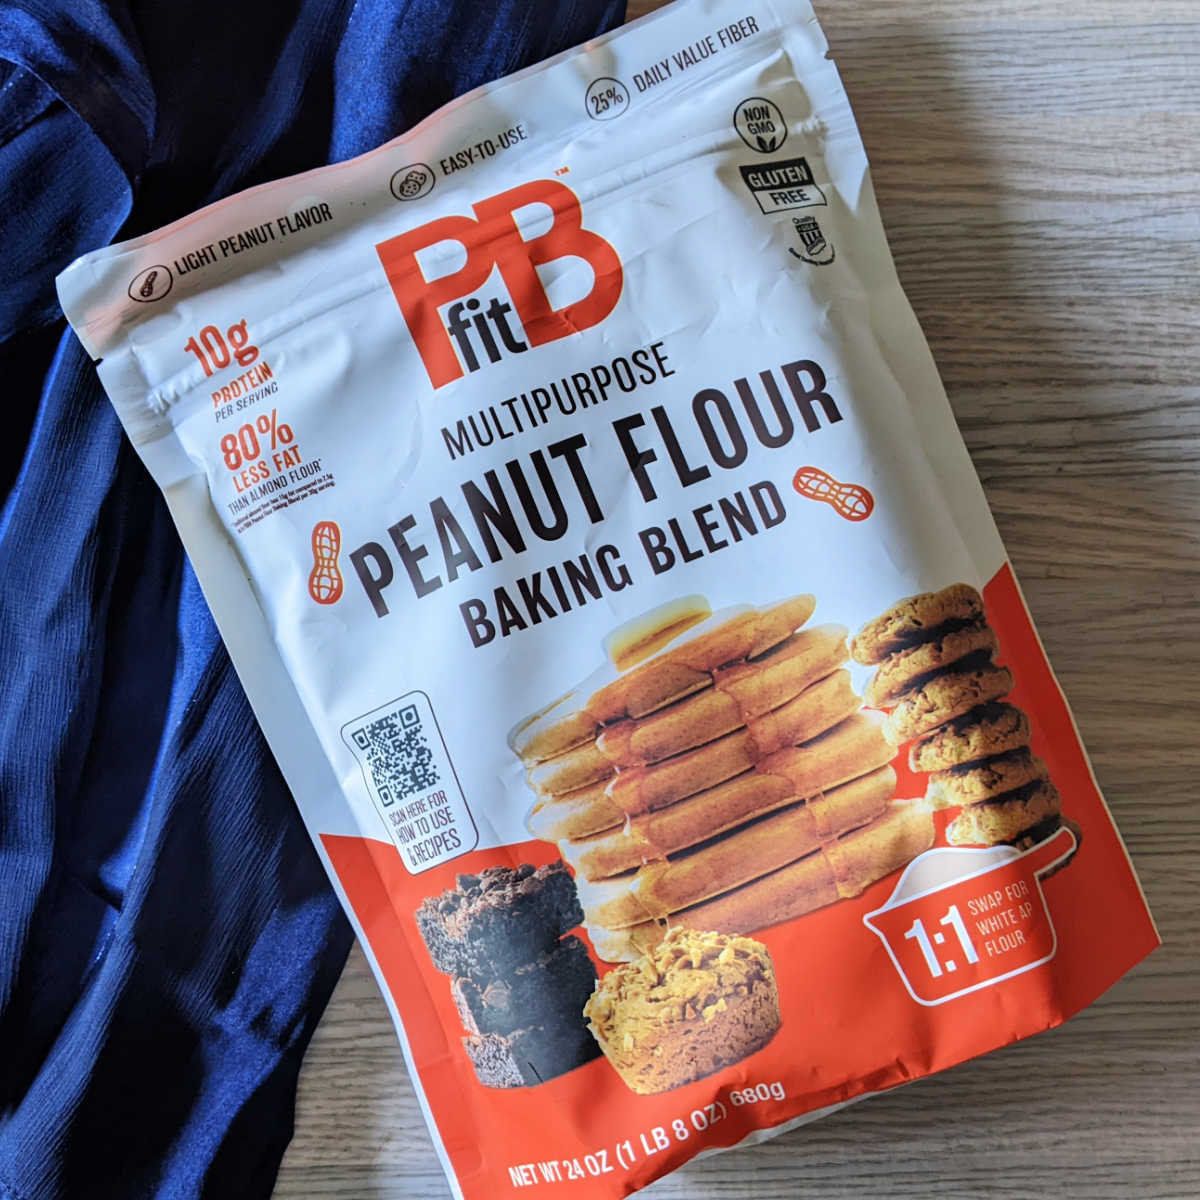 PBfit Peanut Flour Baking Blend